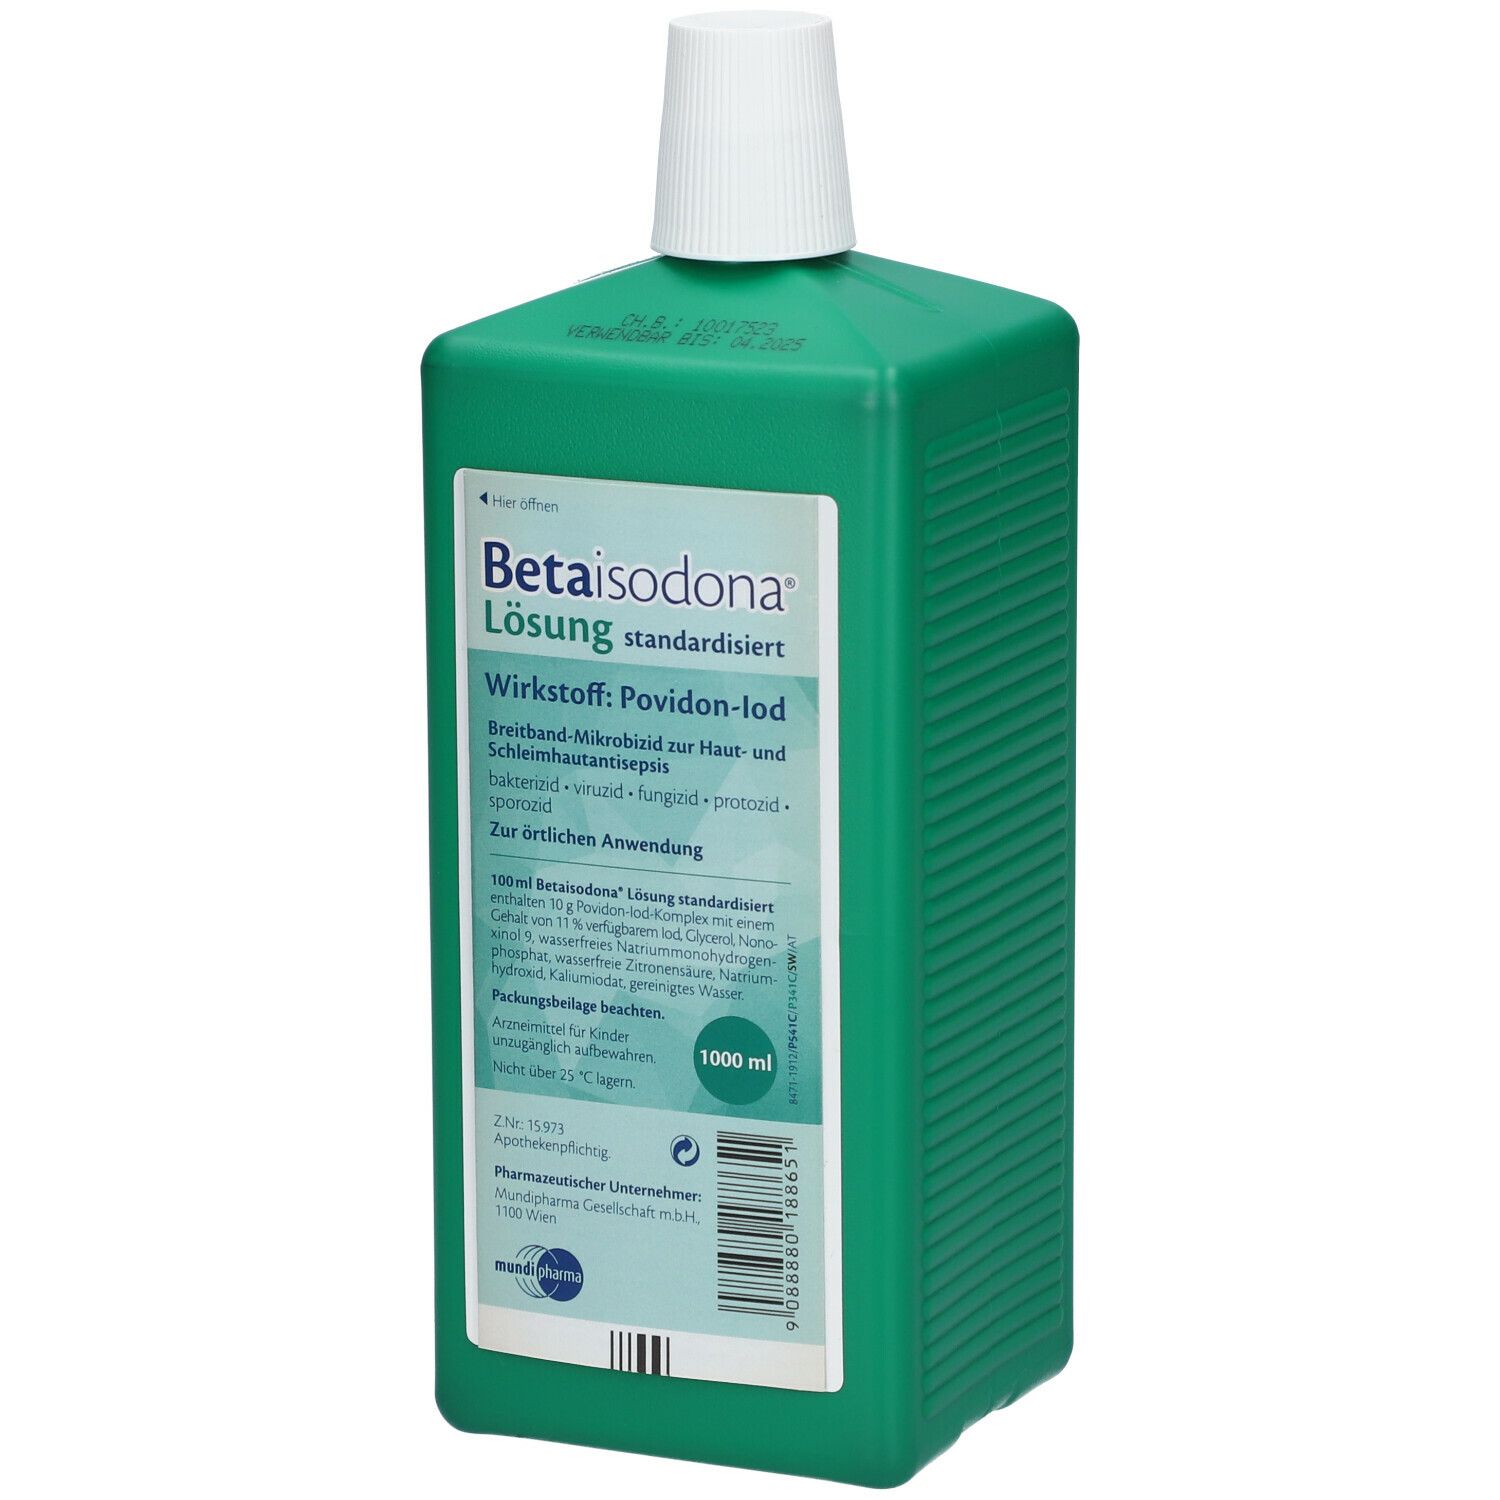 Betaisodona® Lösung standardisiert